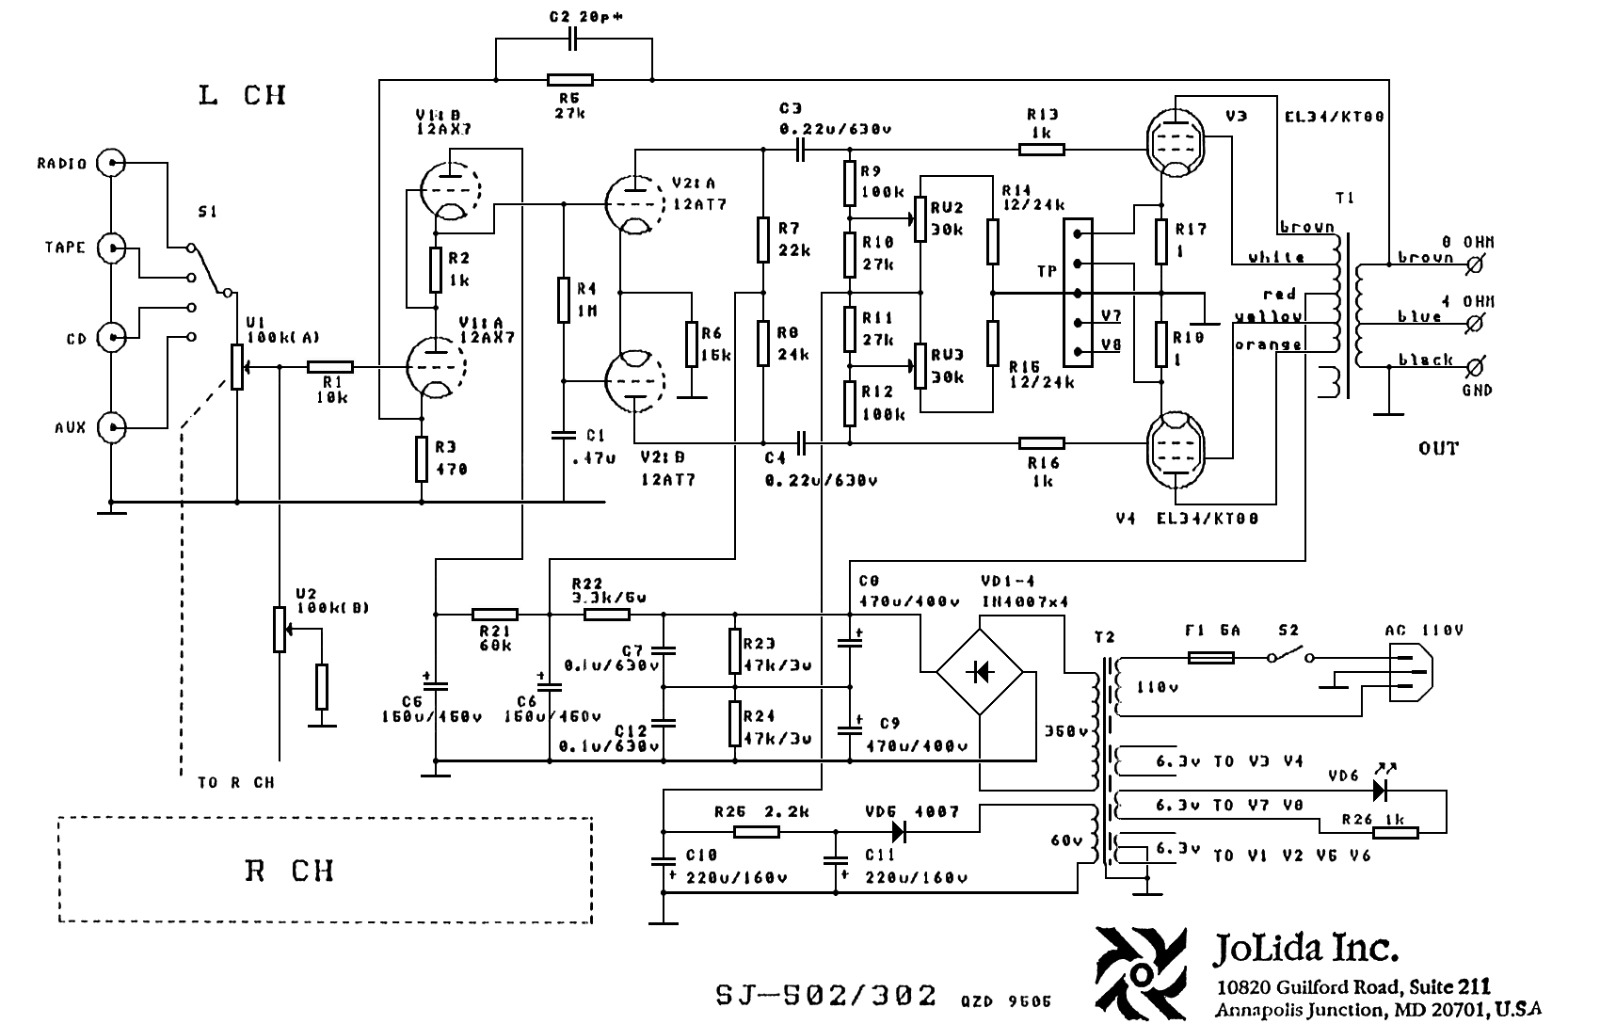 Jolida sj 302a, sj 502a schematic